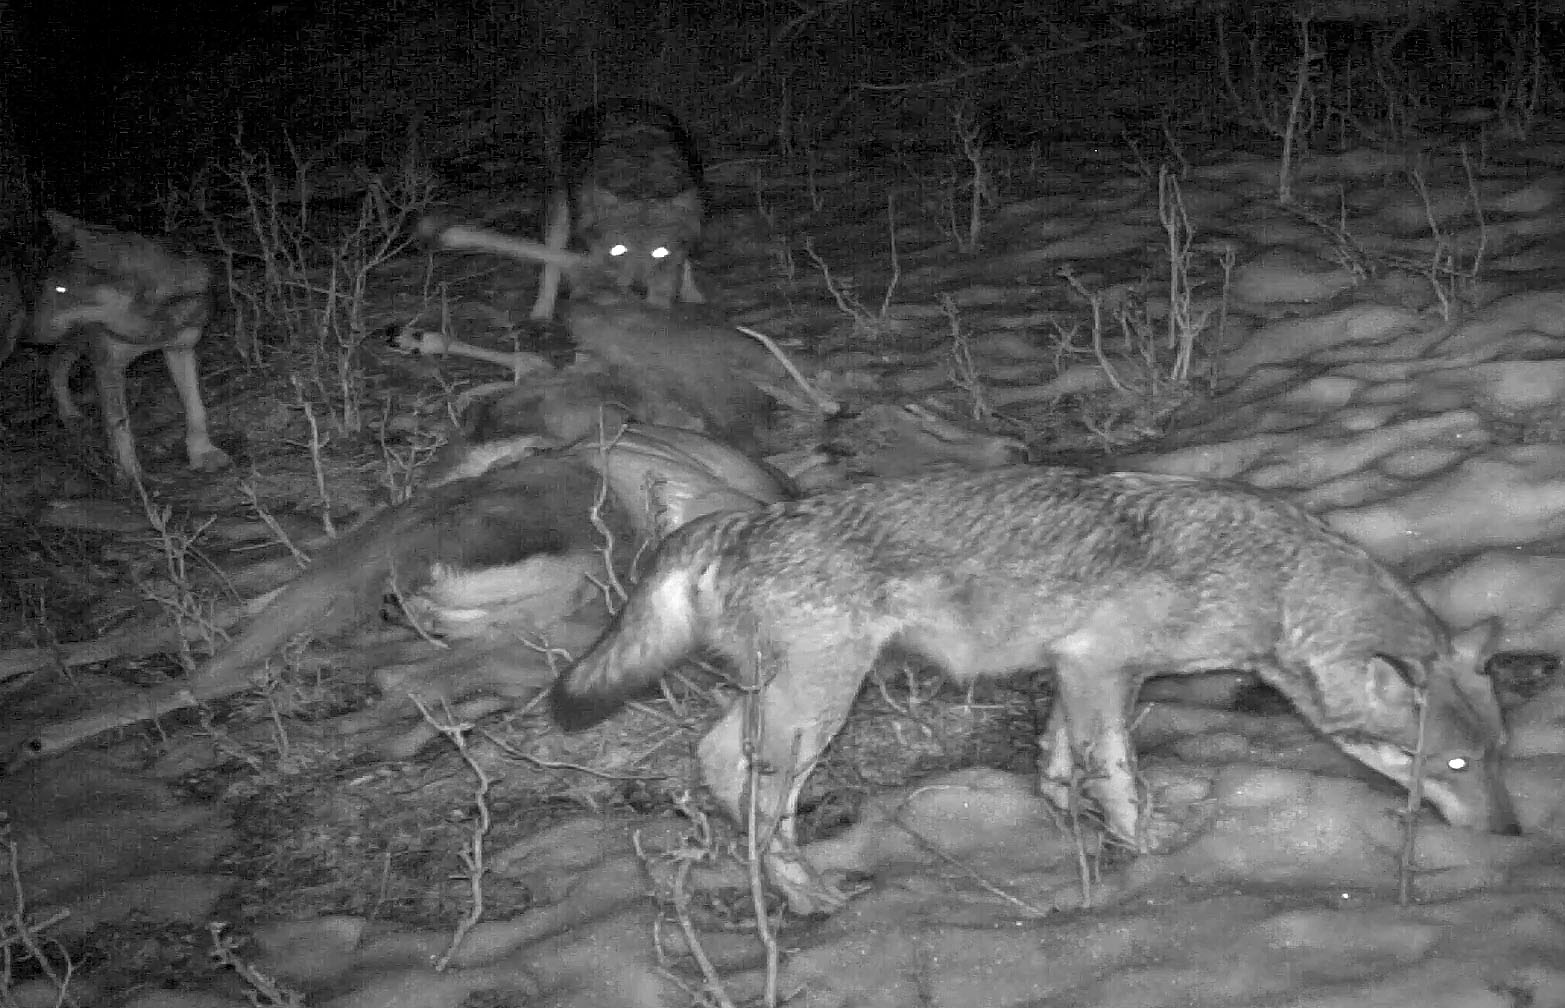 Tre lupi cacciano un cervo daguet - fototrappola - Massimo Rosso